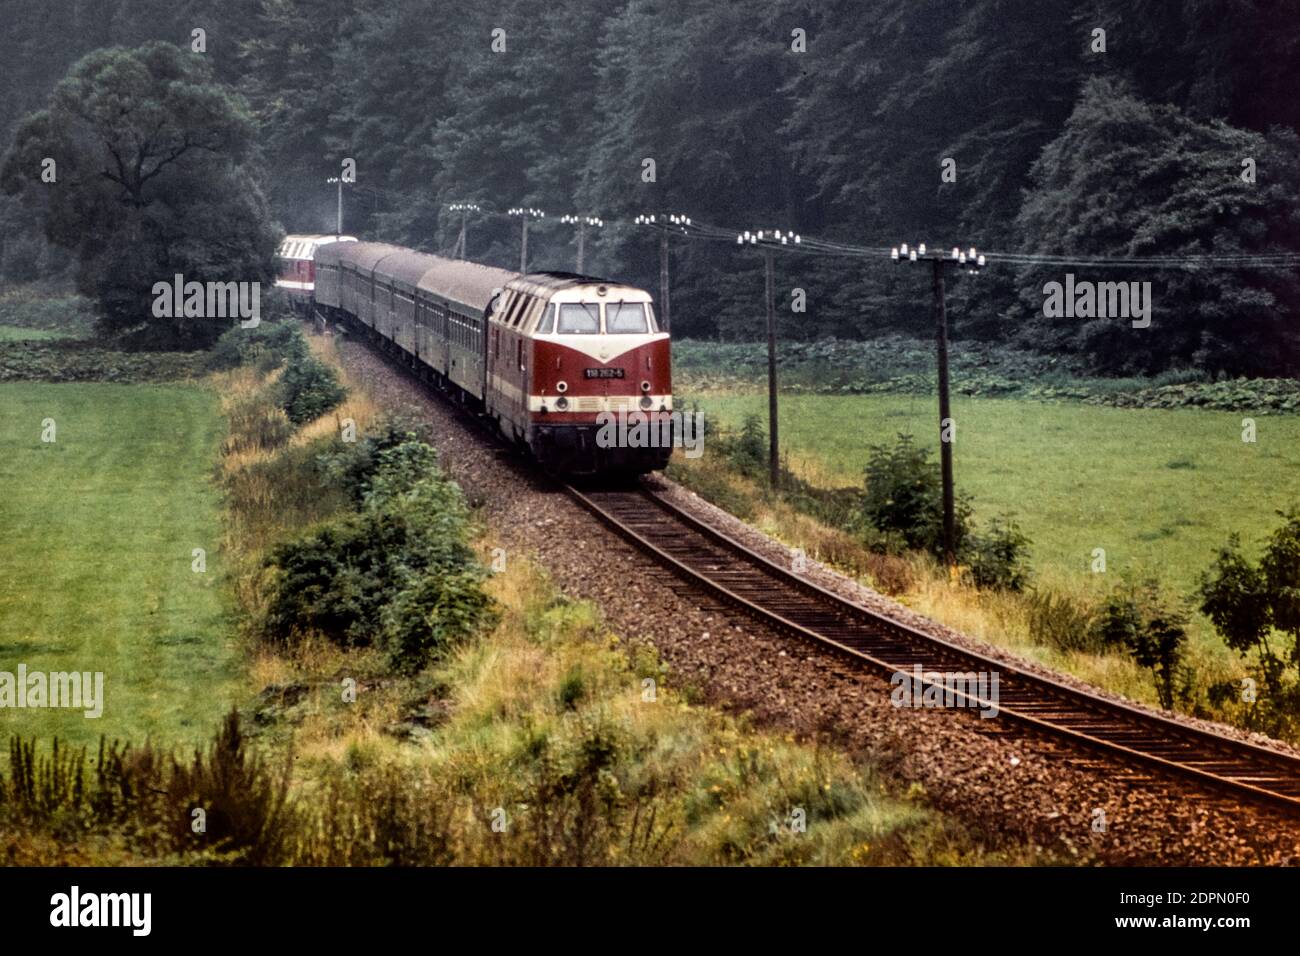 Train de voyageurs d'Ilmenau à Themar avec deux locomotives diesel de classe 118 près de Manebach en septembre 1979, Thuringe, Allemagne, Europe Banque D'Images